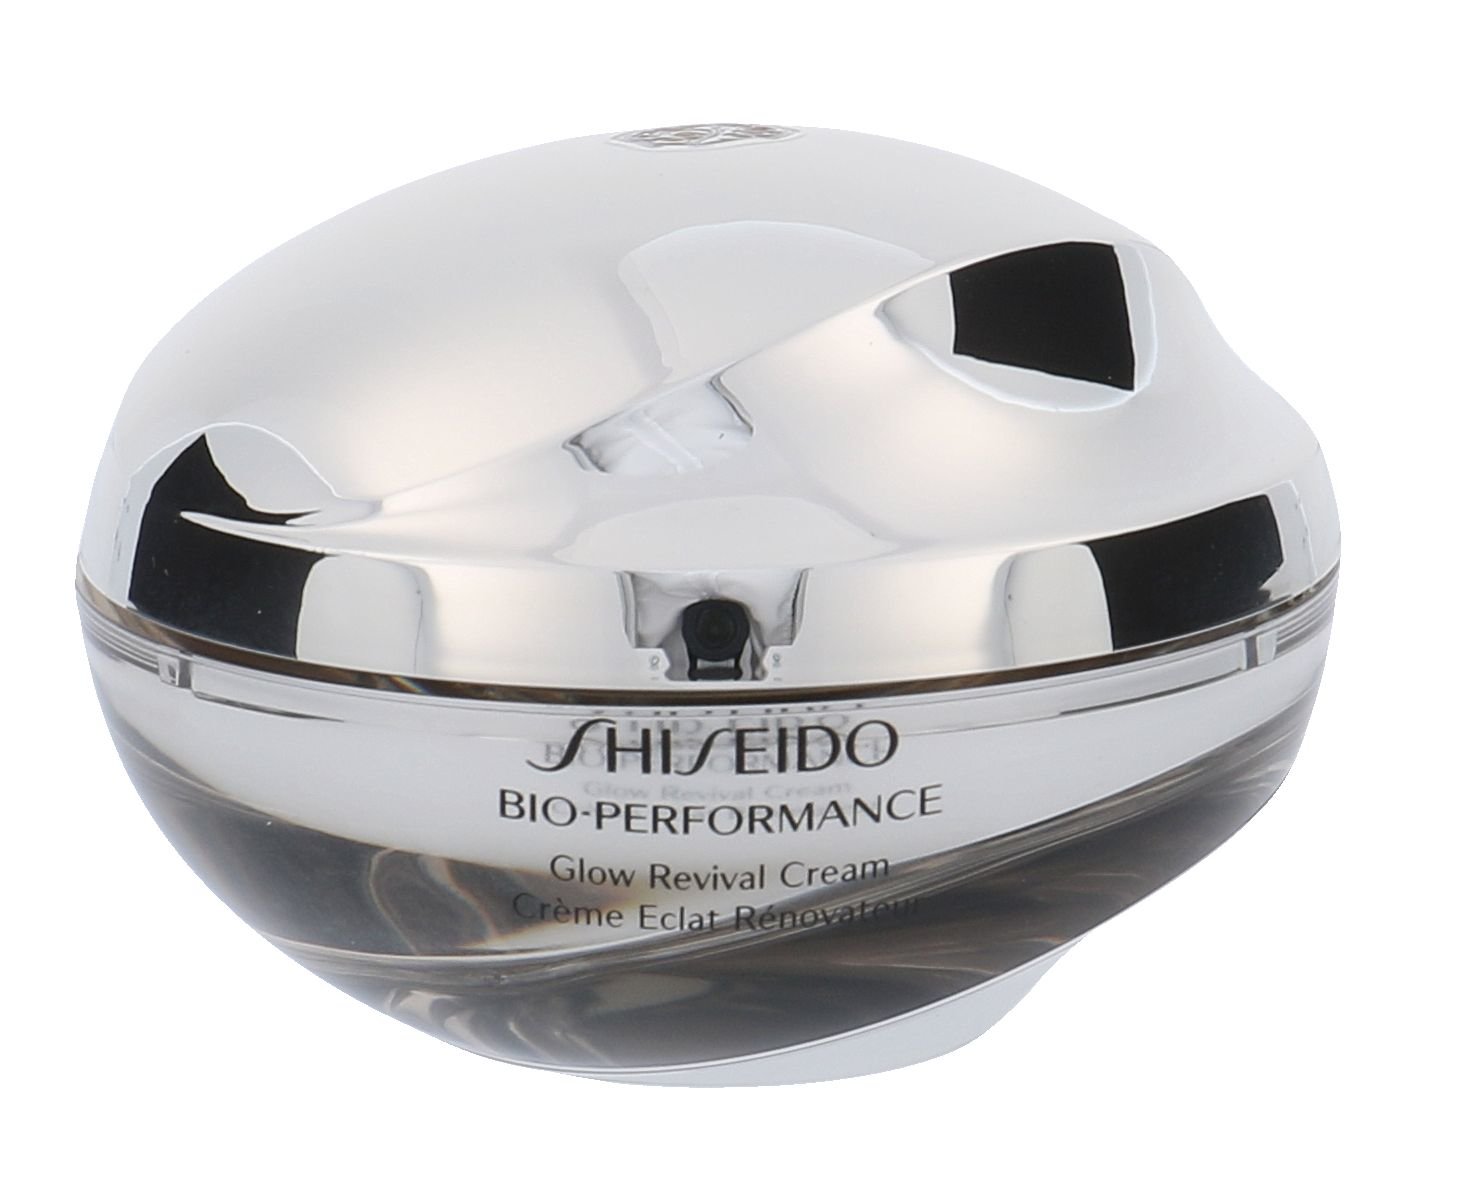 Shiseido Bio-Performance Glow Revival Cream 50ml dieninis kremas Testeris